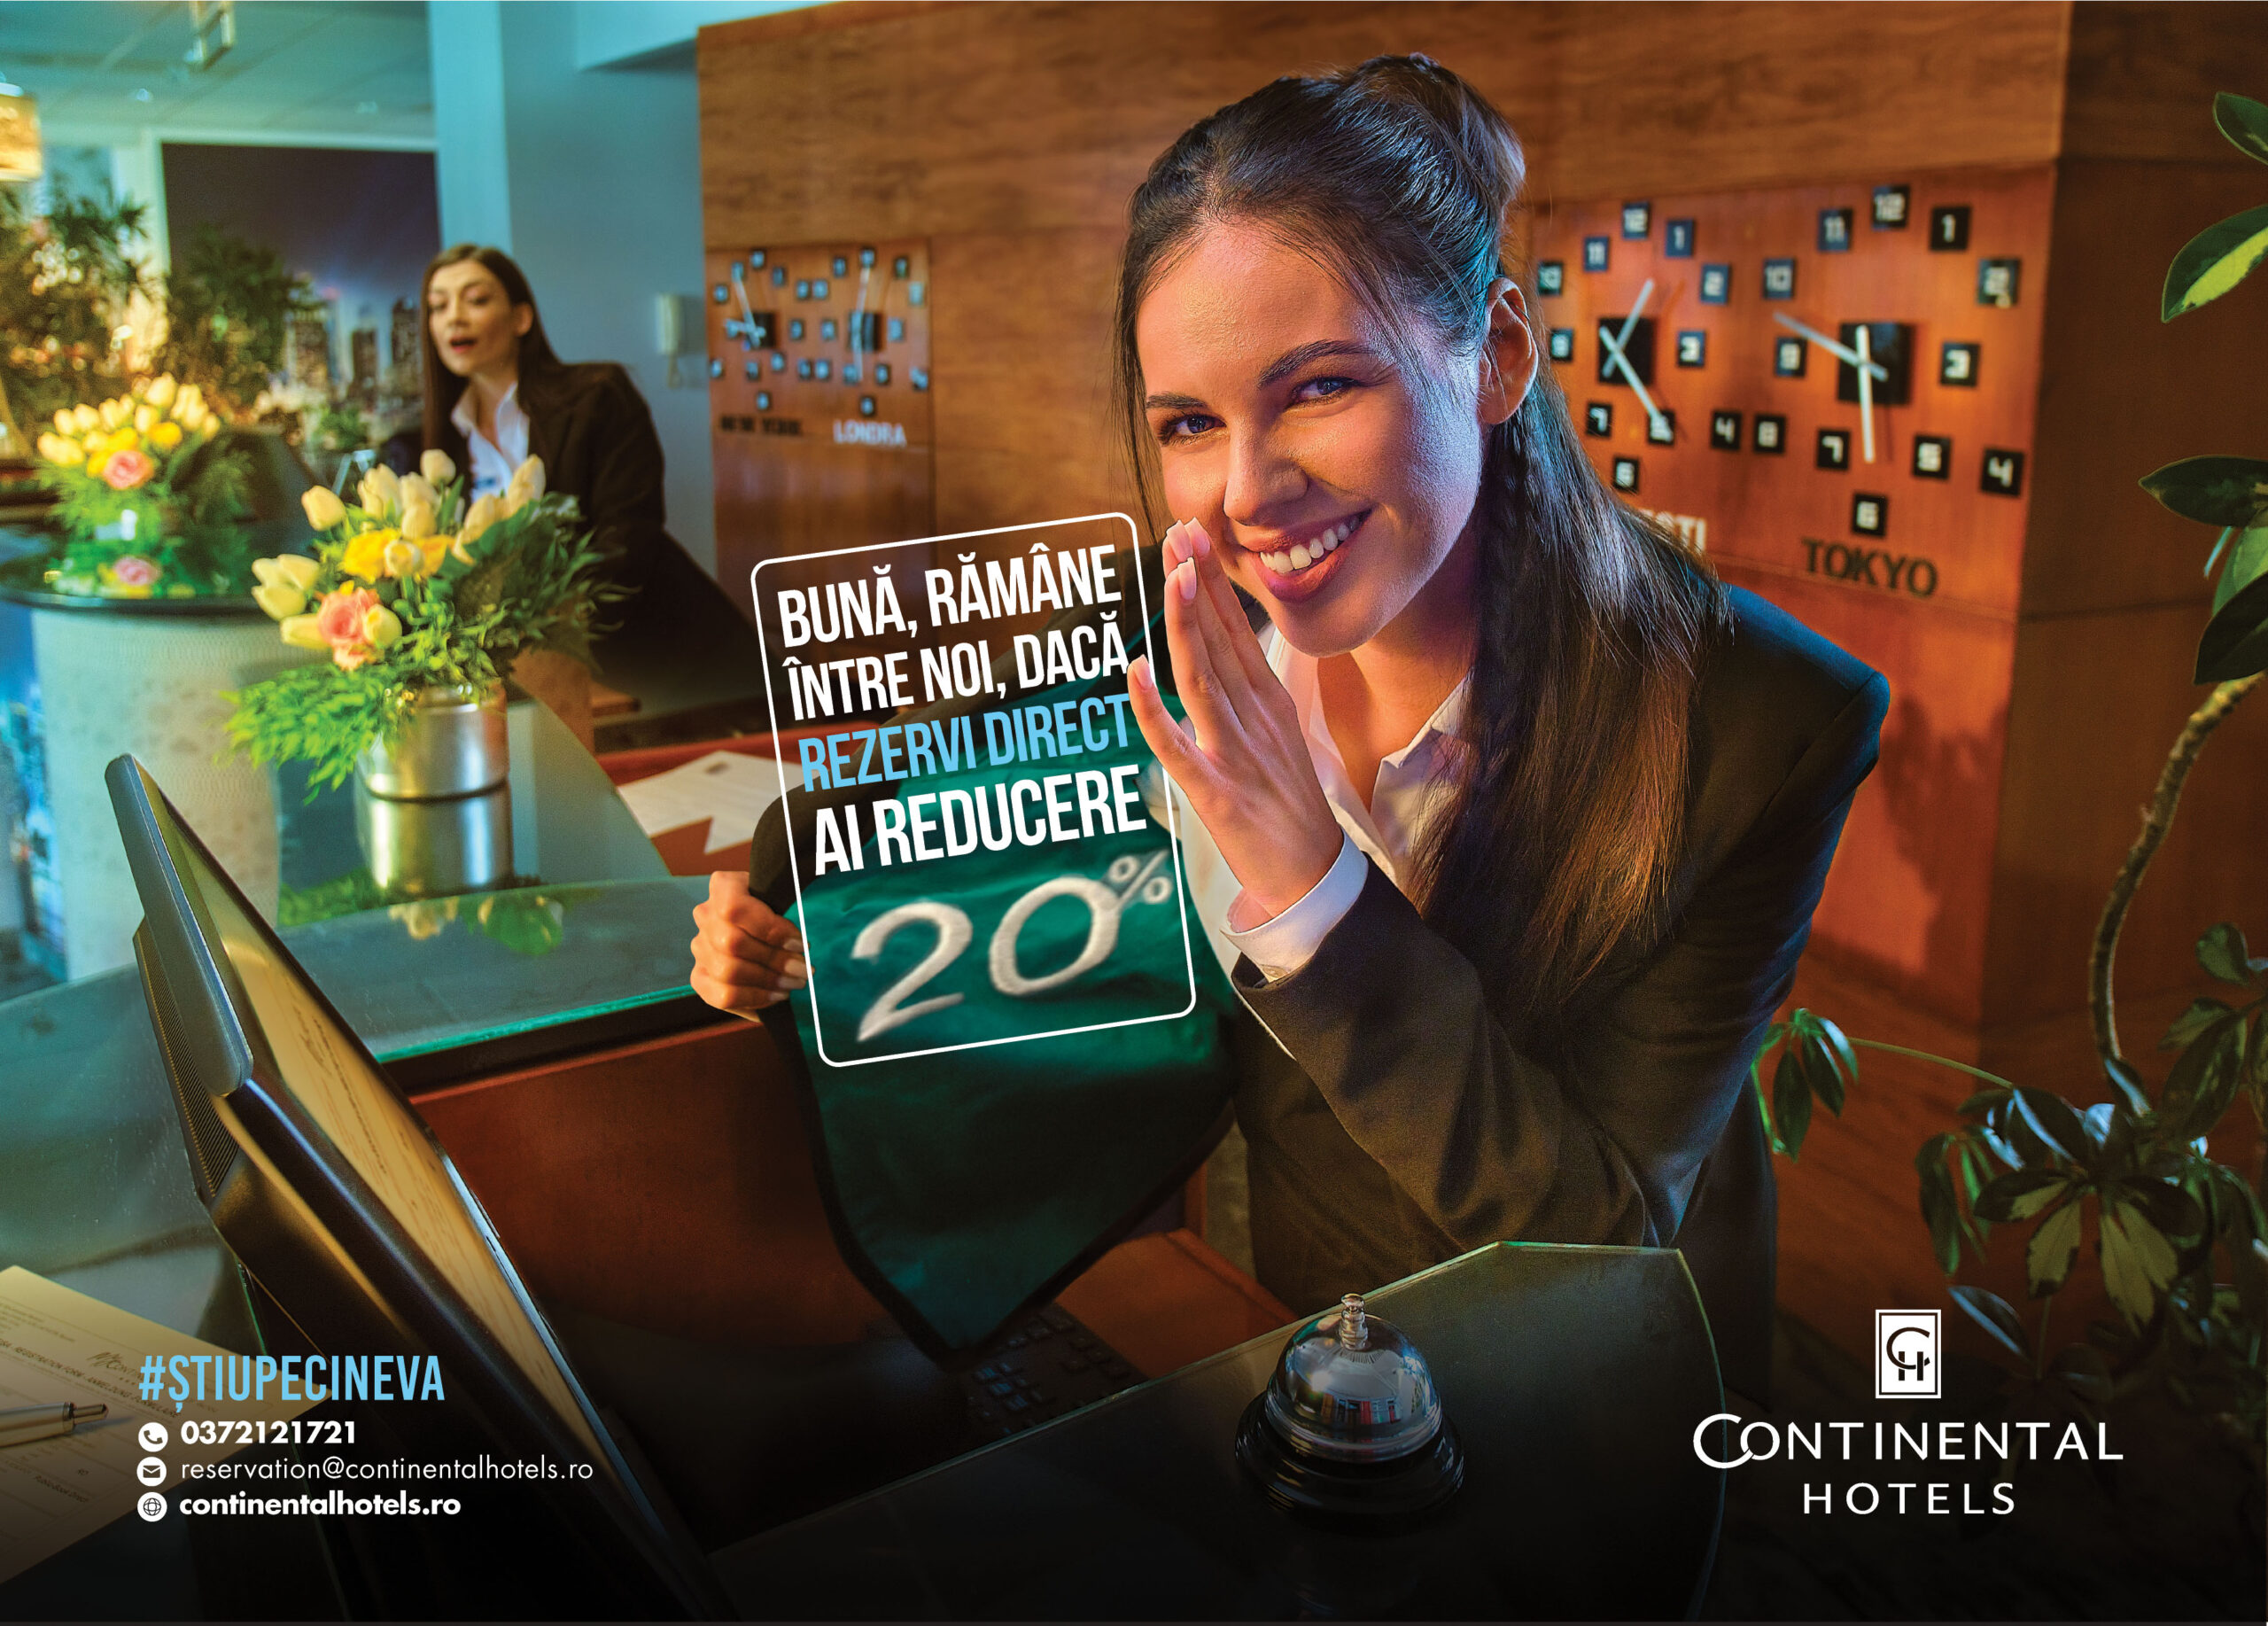 Continental Hotels oferă discount de 20% la rezervările directe prin campania #știupecineva